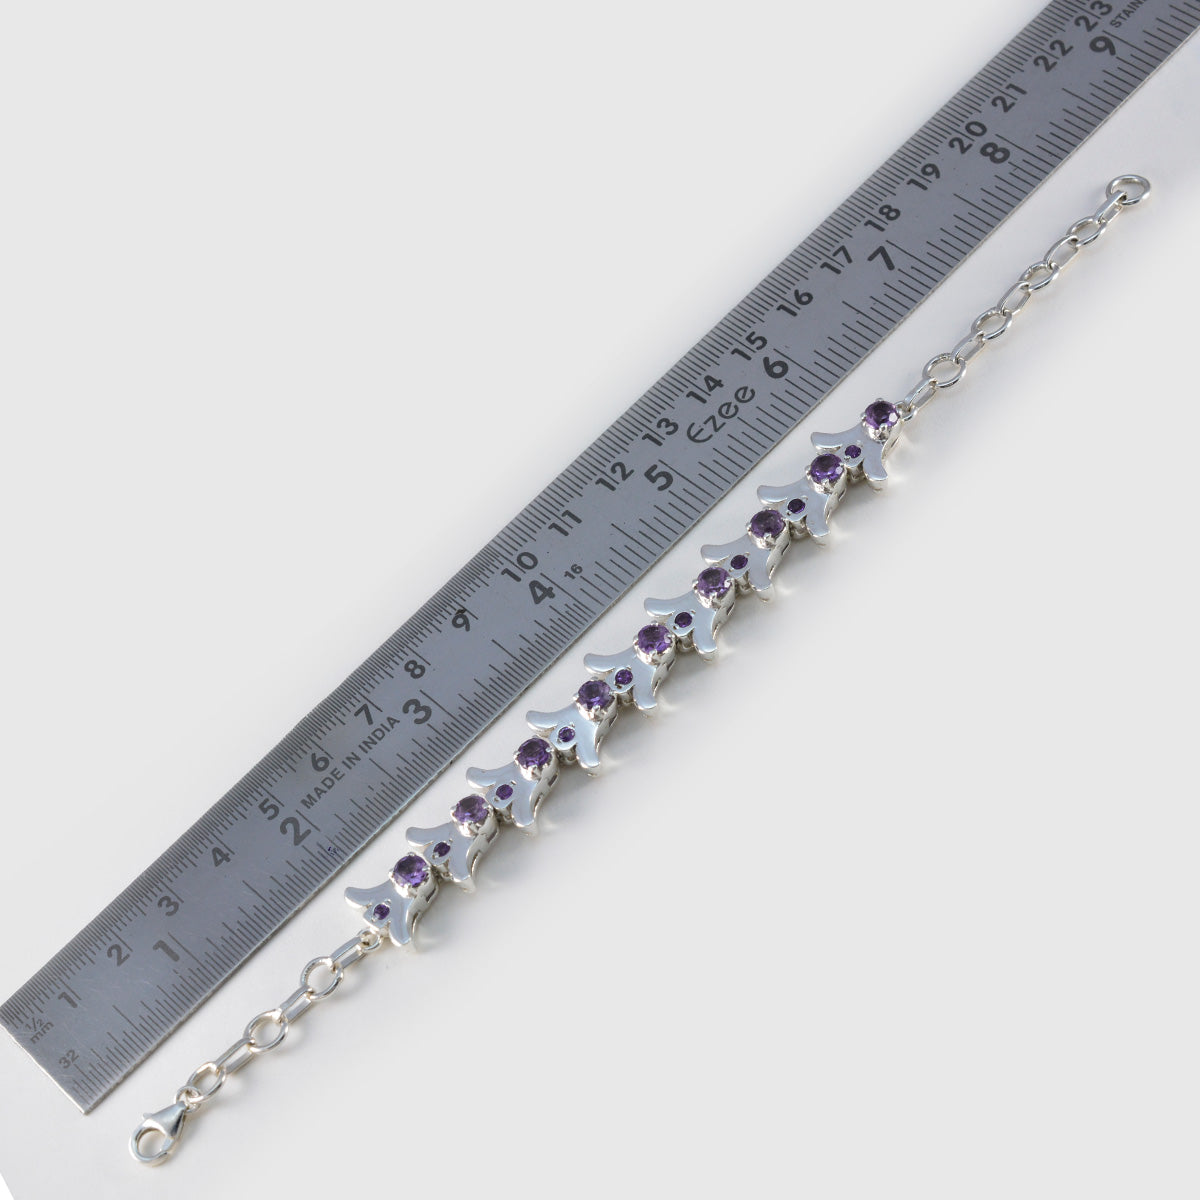 Riyo Edelstein-Armband aus 925er-Sterlingsilber für Mädchen, Amethyst-Armband, Krappenfassung, Armband mit Fischhaken-Gliederarmband, Größe L: 15,2–21,6 cm.